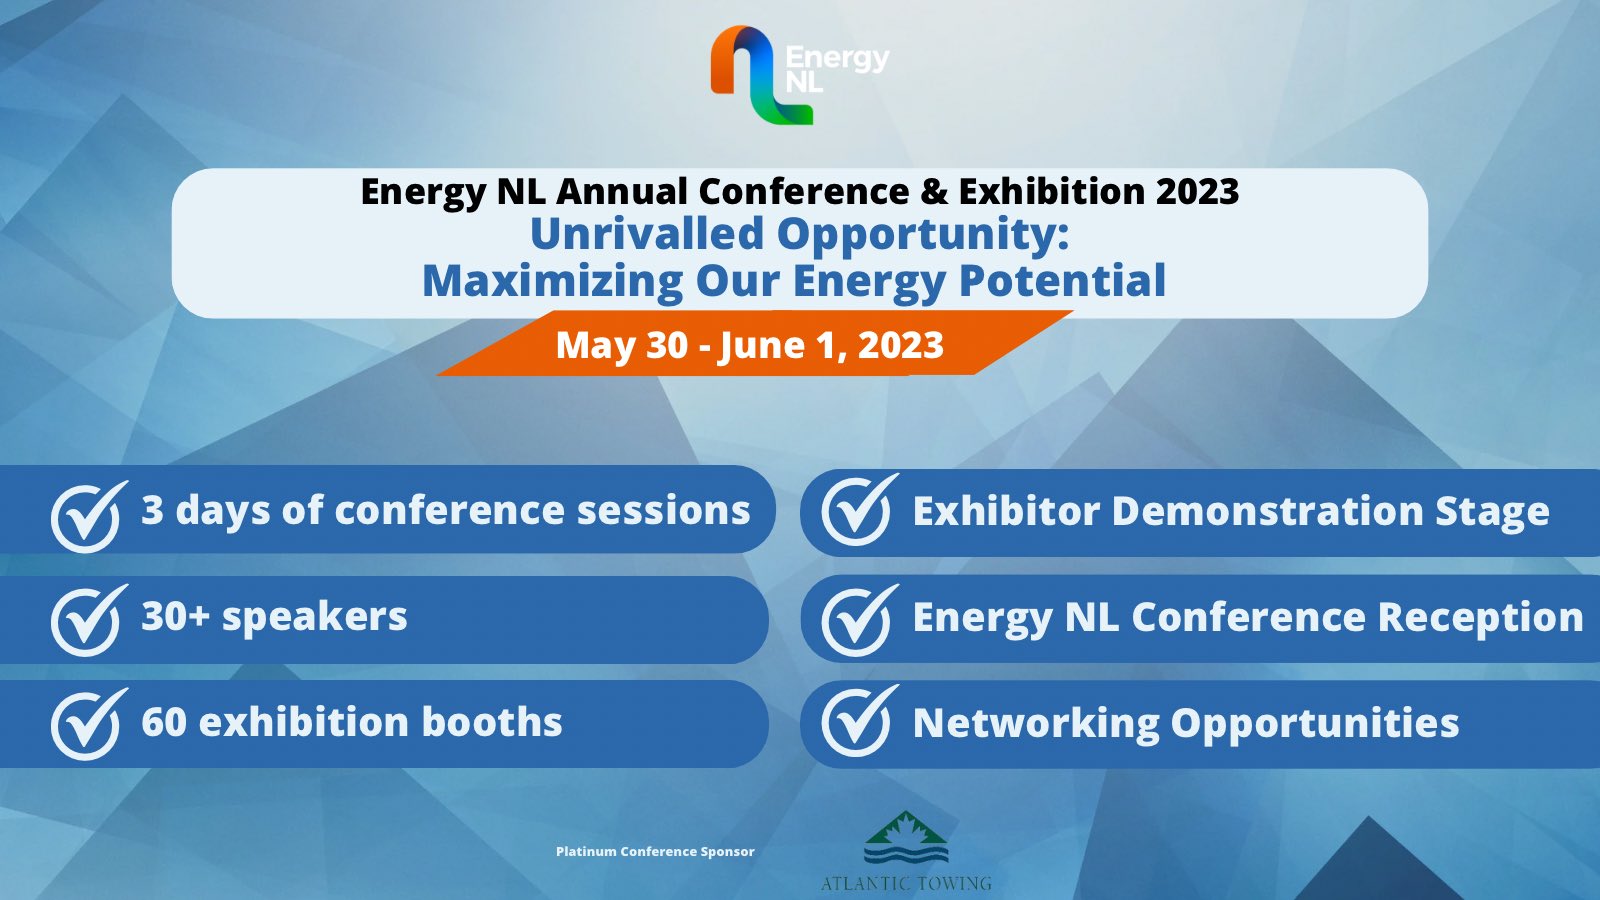 bord Verzorger Echter Energy NL (@WeAreEnergyNL) / Twitter